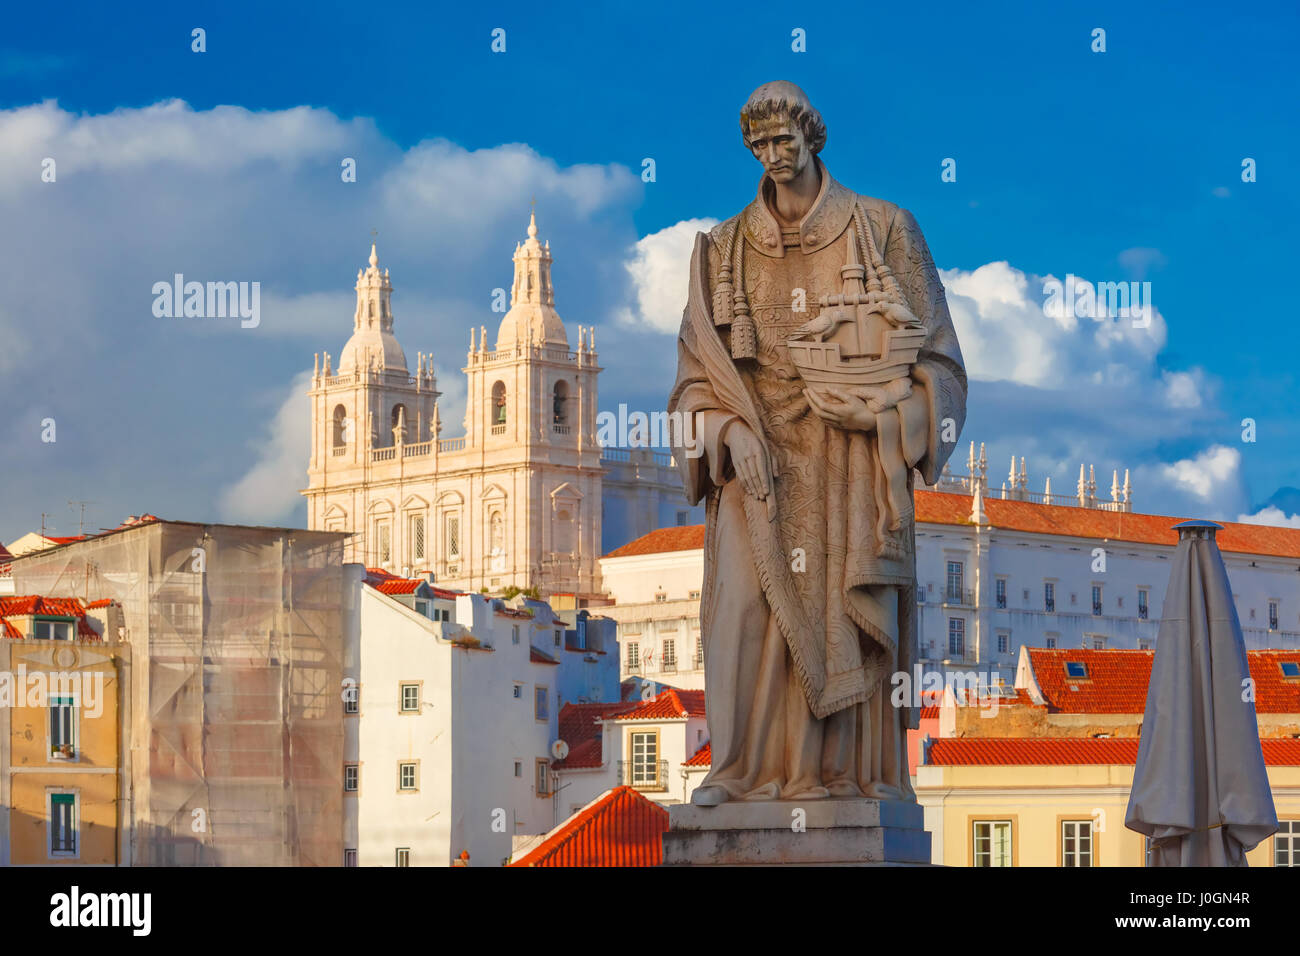 Statue des Heiligen Vinzenz, der Gönner Heiliges von Lissabon, in Alfama, Lissabon, Portugal. Kloster São Vicente de Fora im Hintergrund. Stockfoto